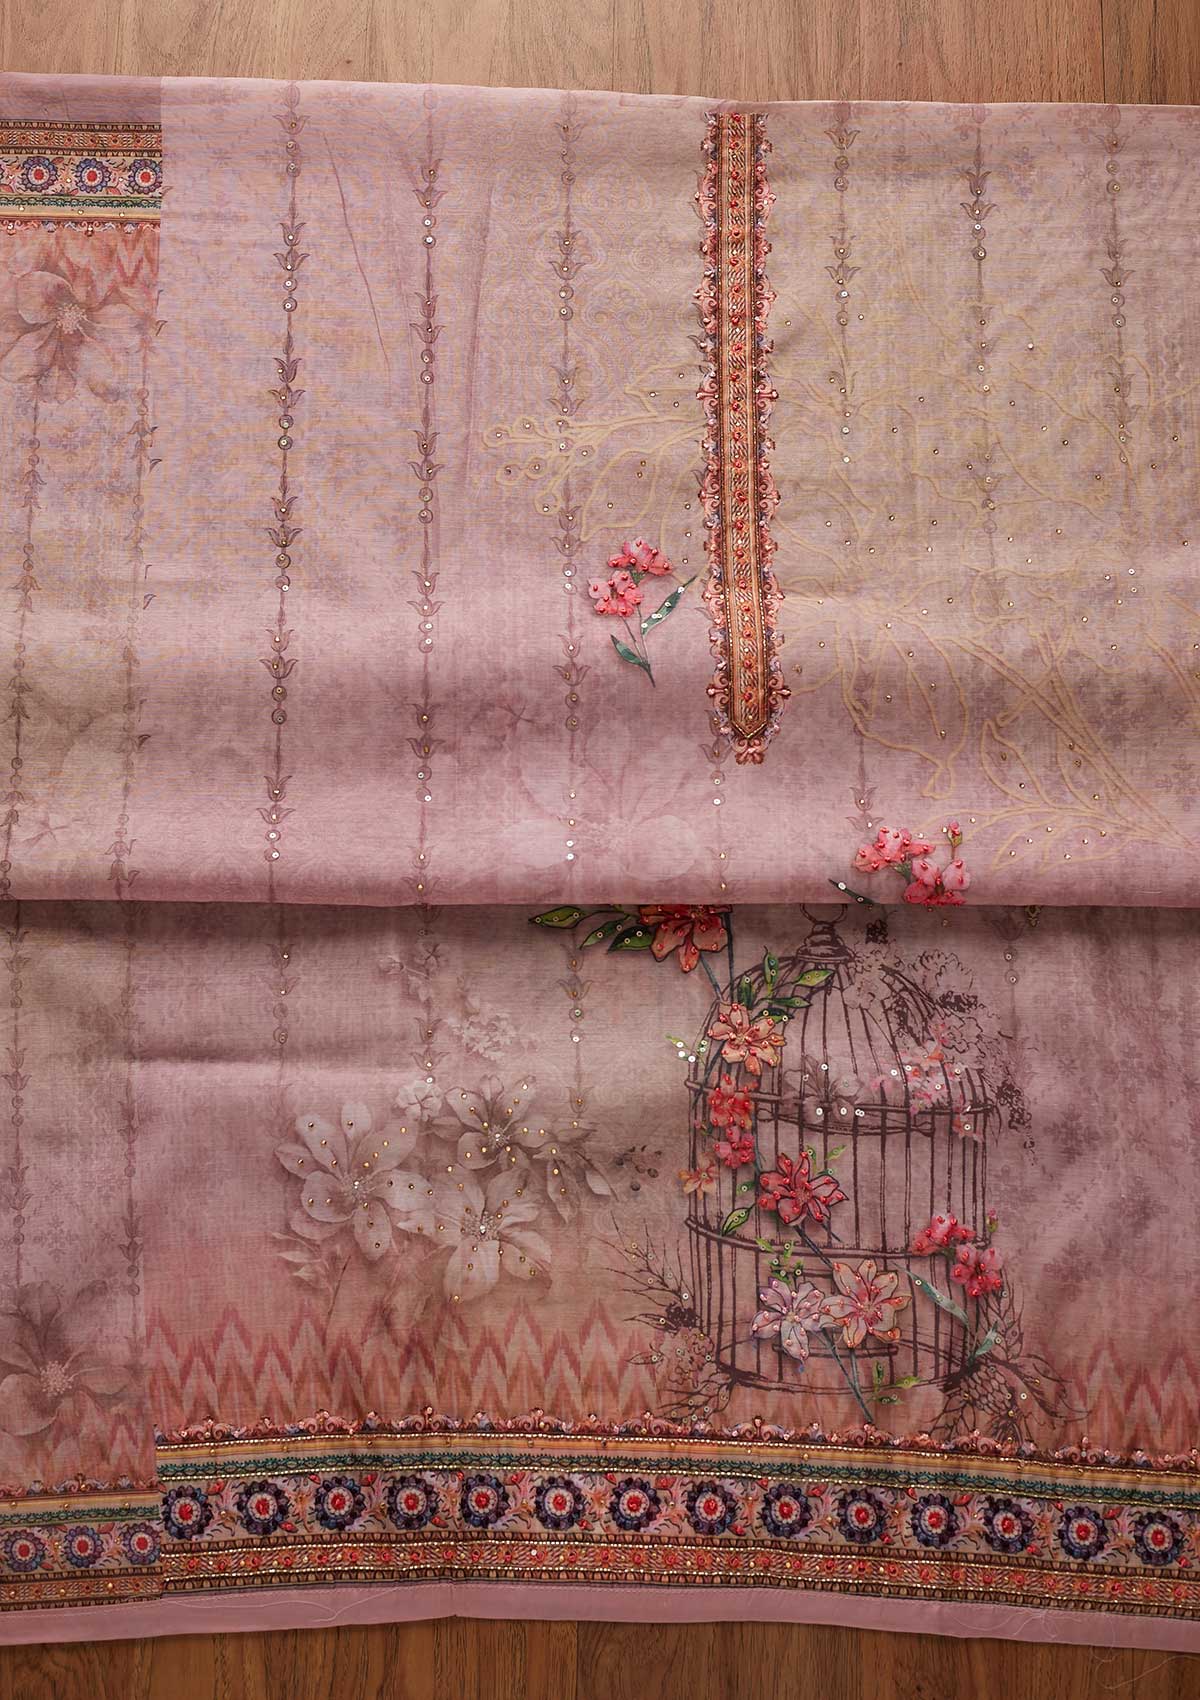 Onion Pink Cutdana Art Silk Designer Unstitched Salwar Suit - koskii